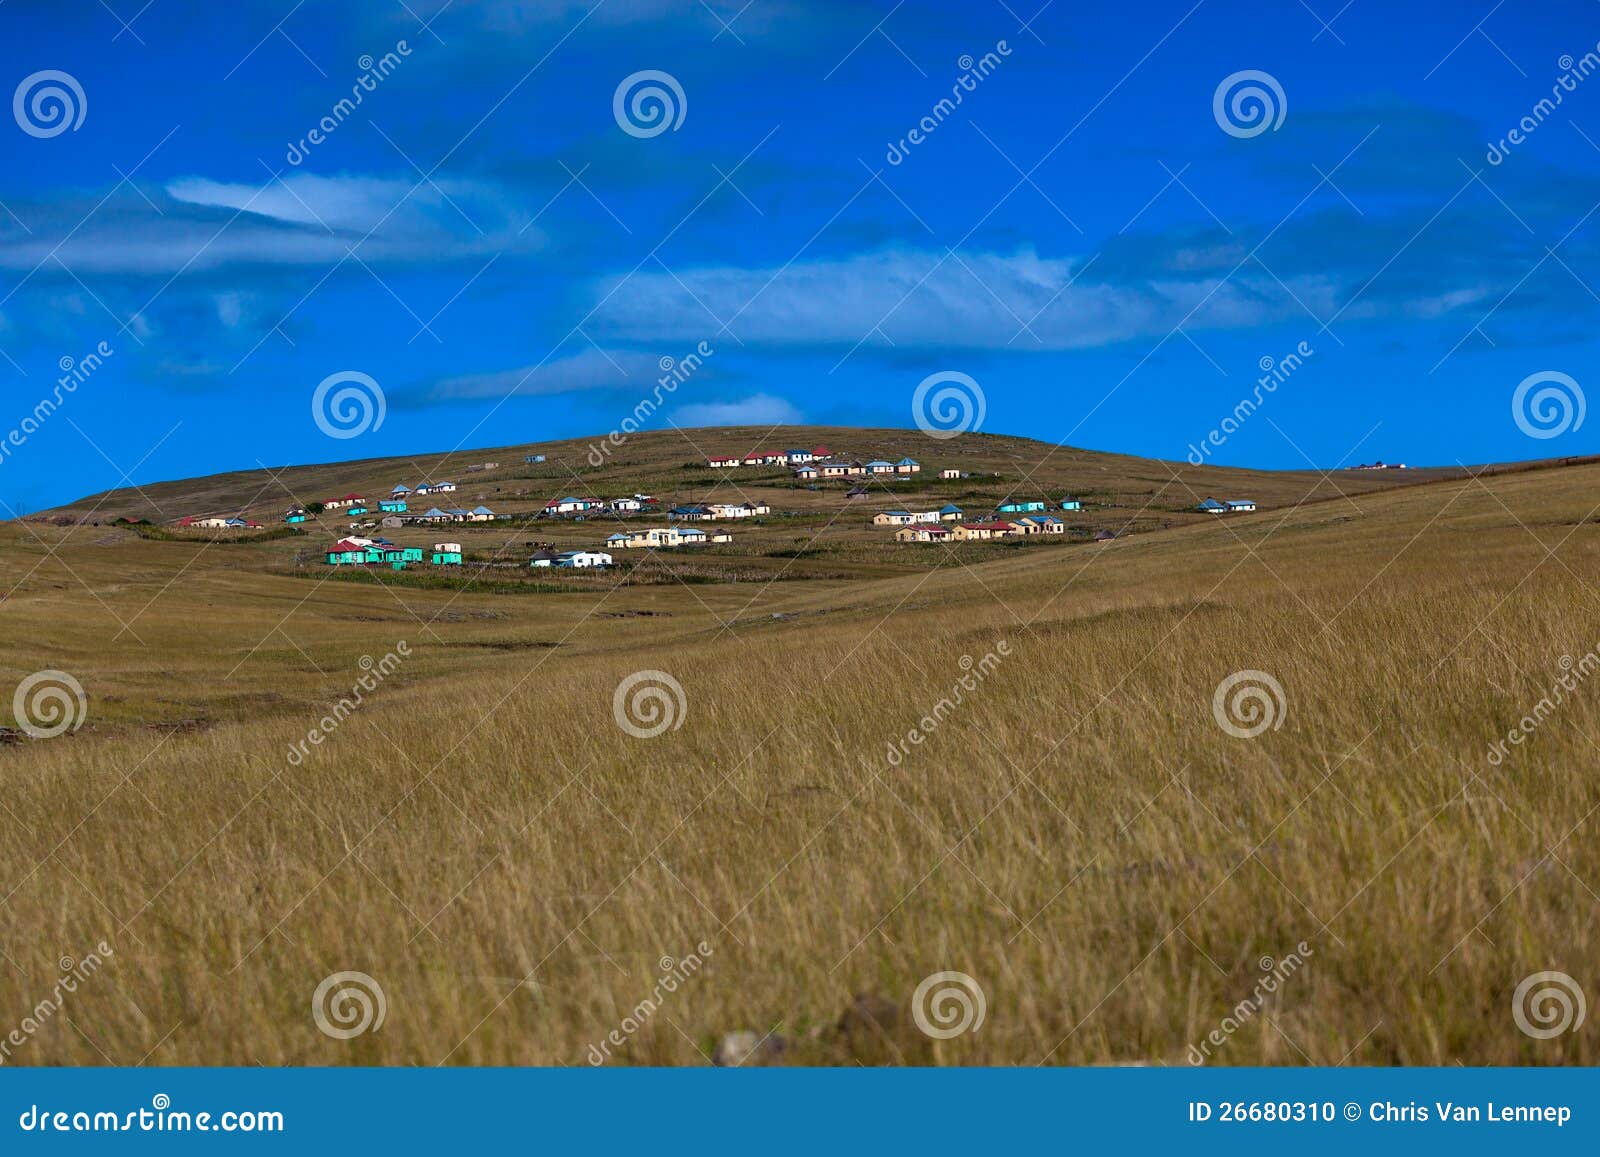 transkei africa homes hillside